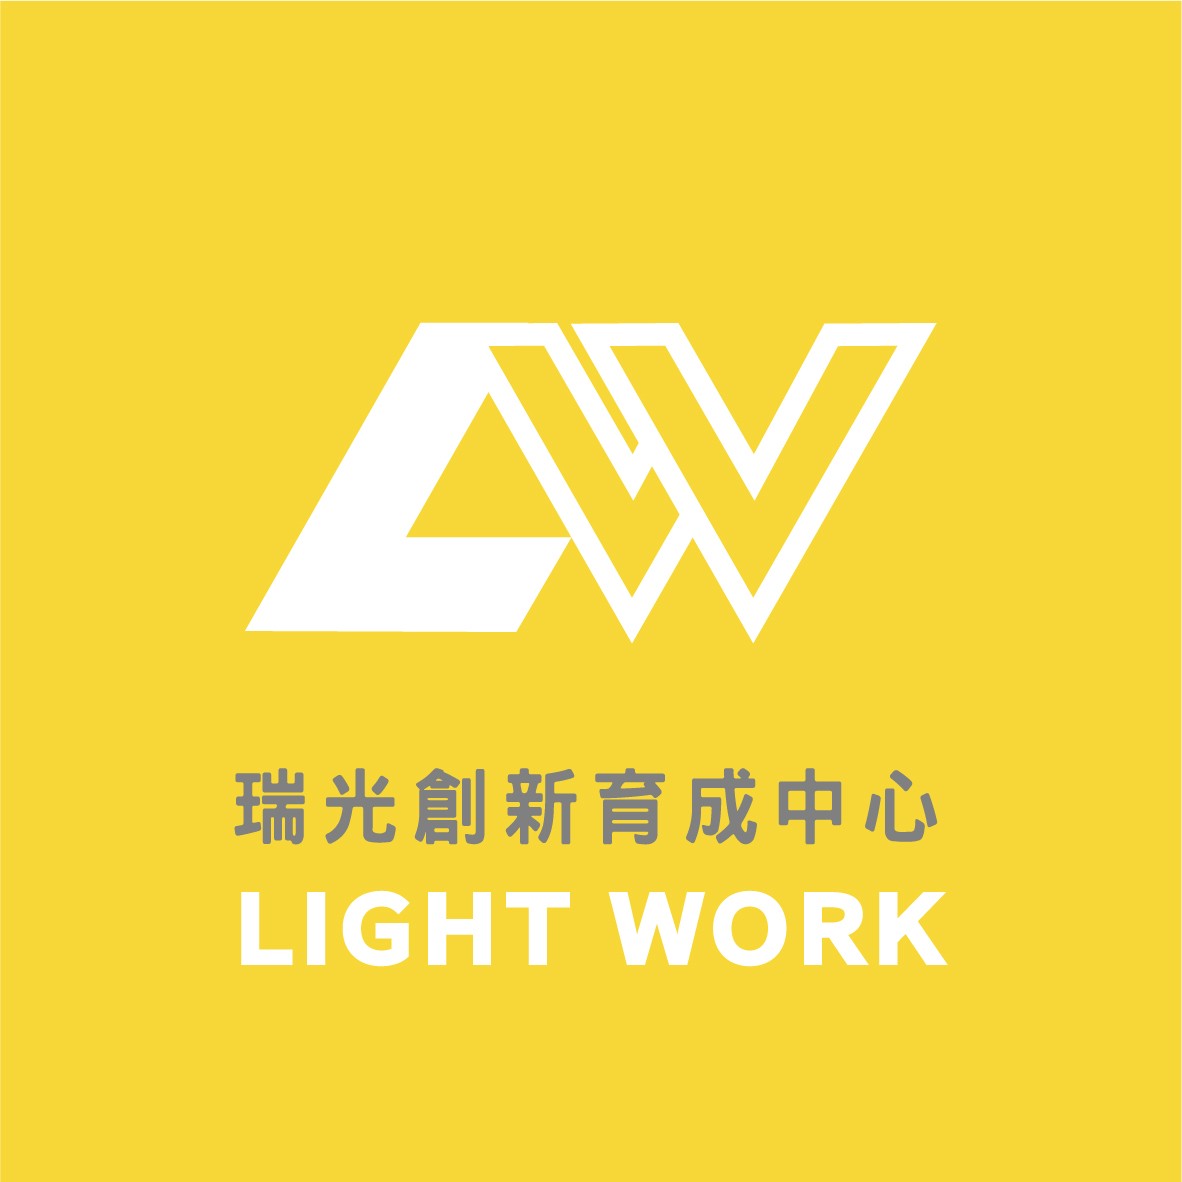 Light Work 瑞光創新育成中心